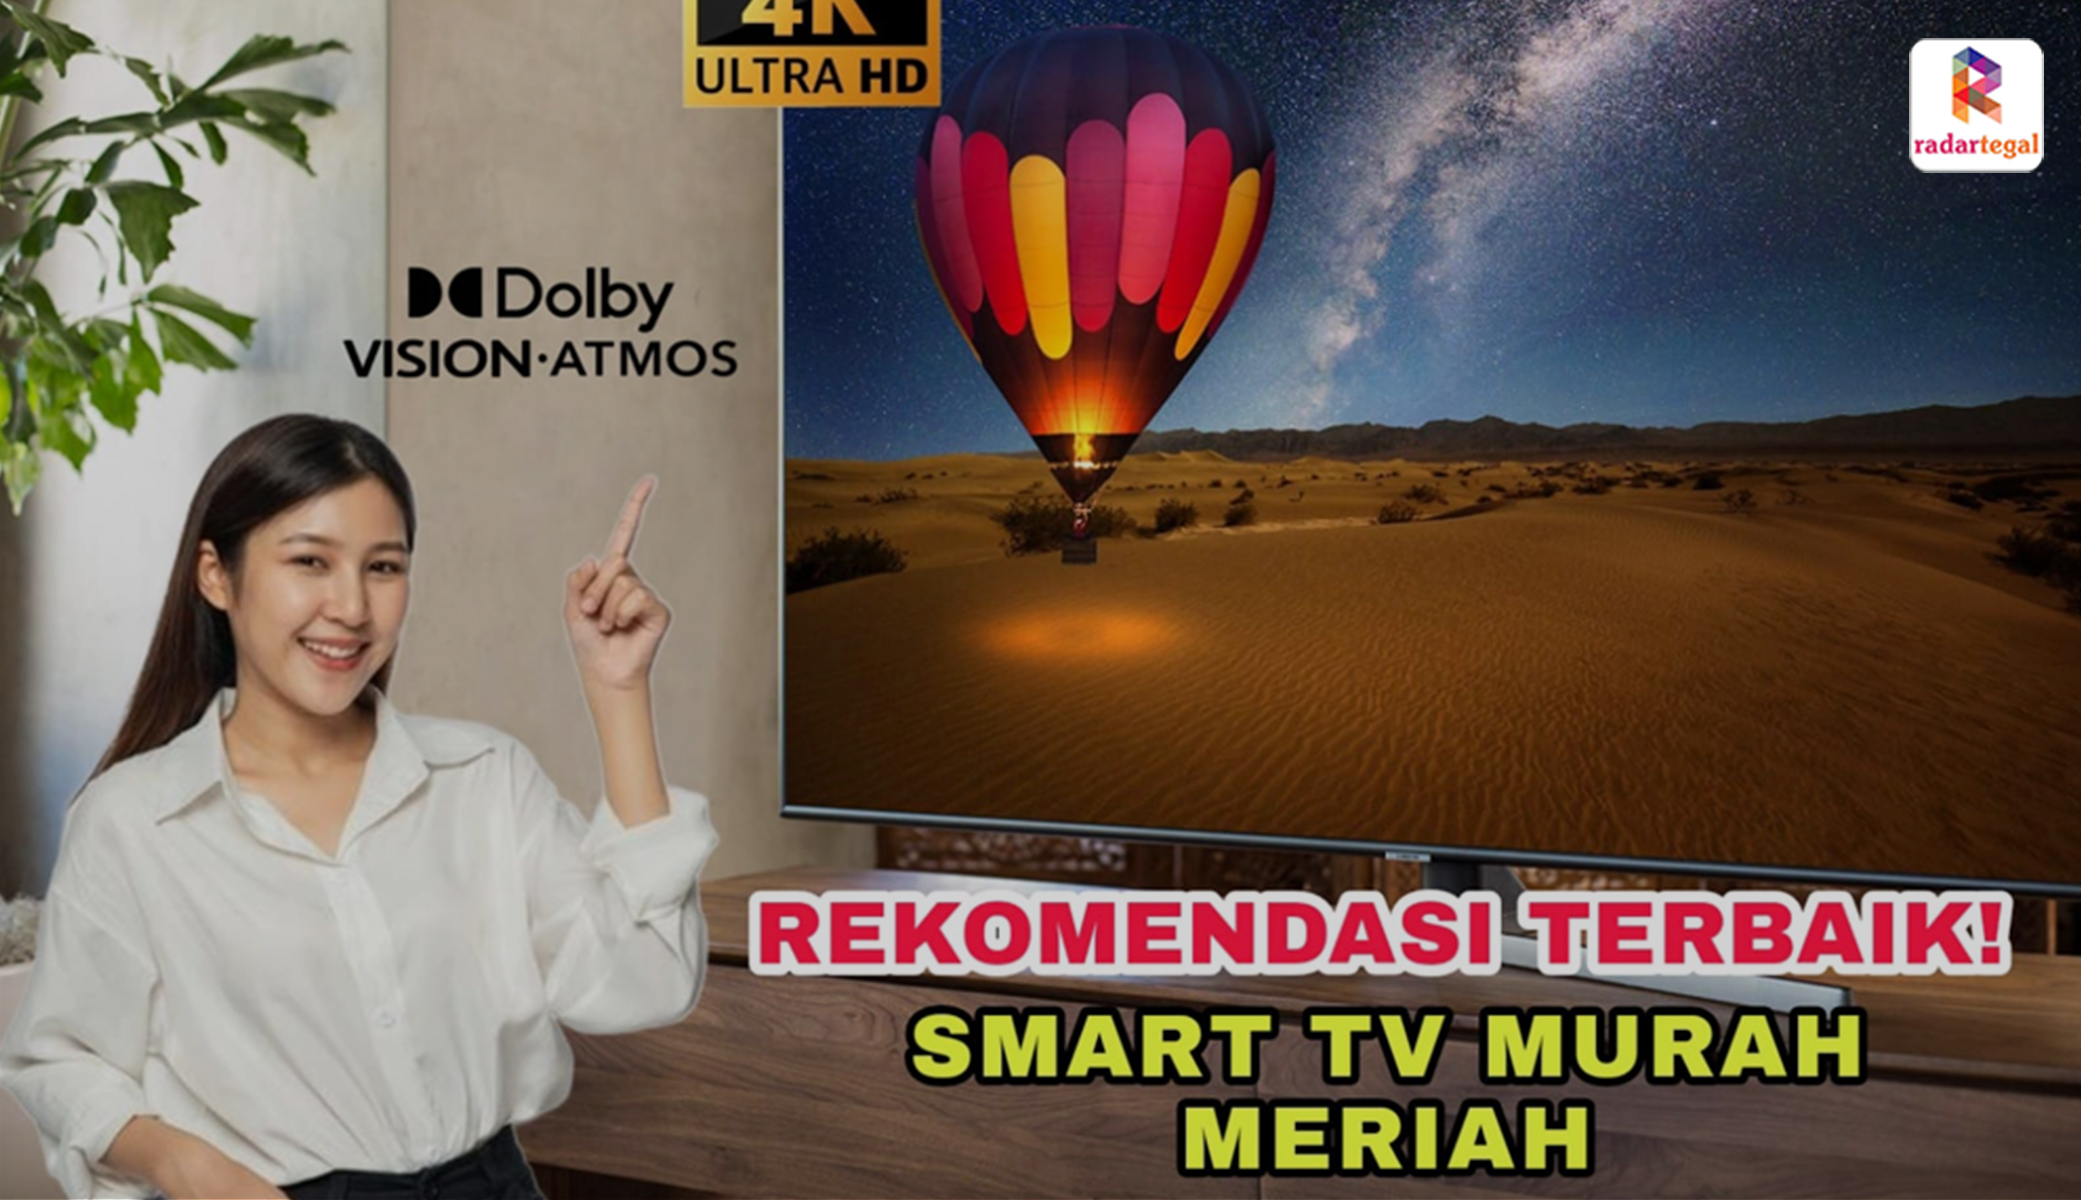 Rekomendasi Smart TV Harga Murah Meriah, Kualitas 4K dengan Soundbar Dolby Atmos Terbaik, Mulai 2 Jutaan